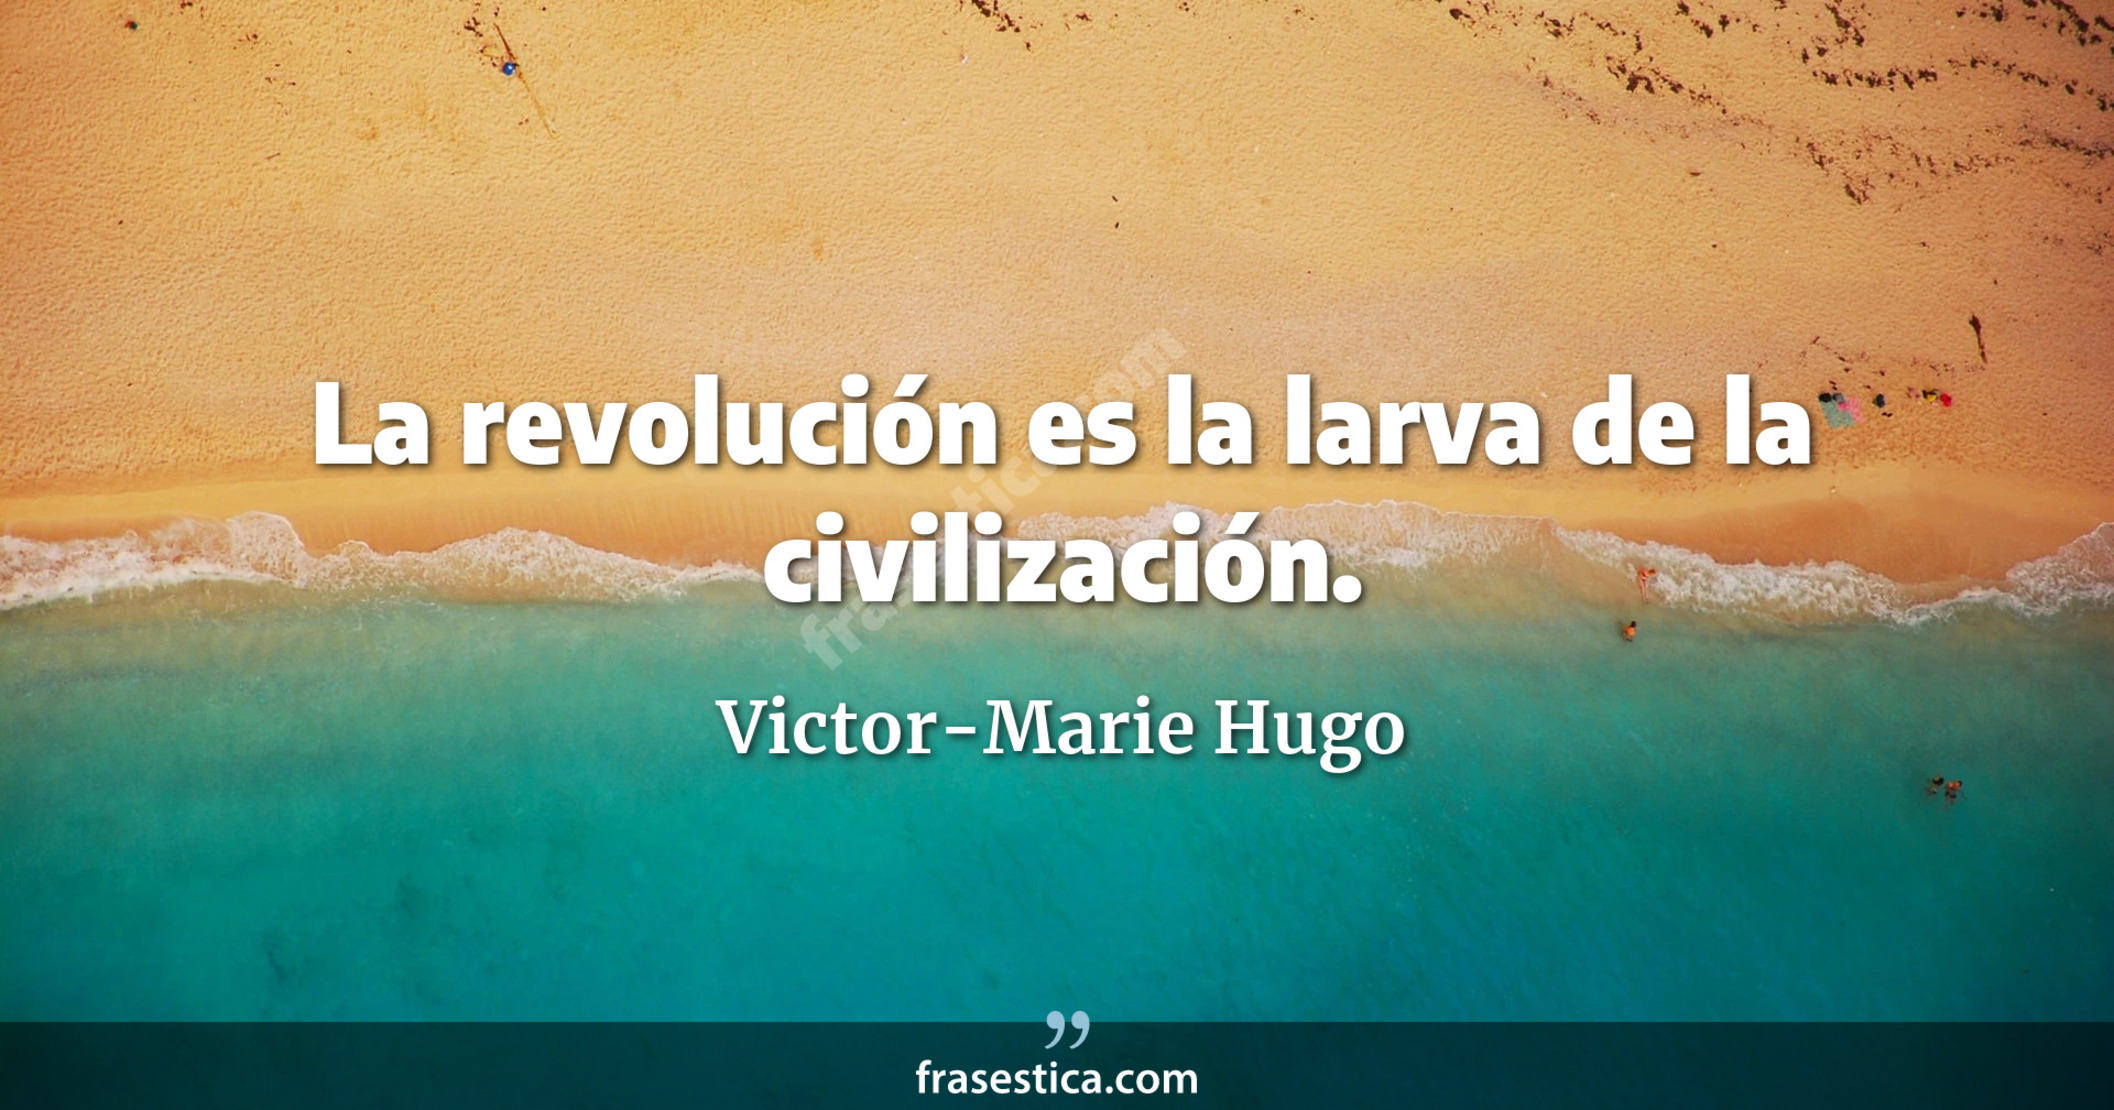 La revolución es la larva de la civilización. - Victor-Marie Hugo